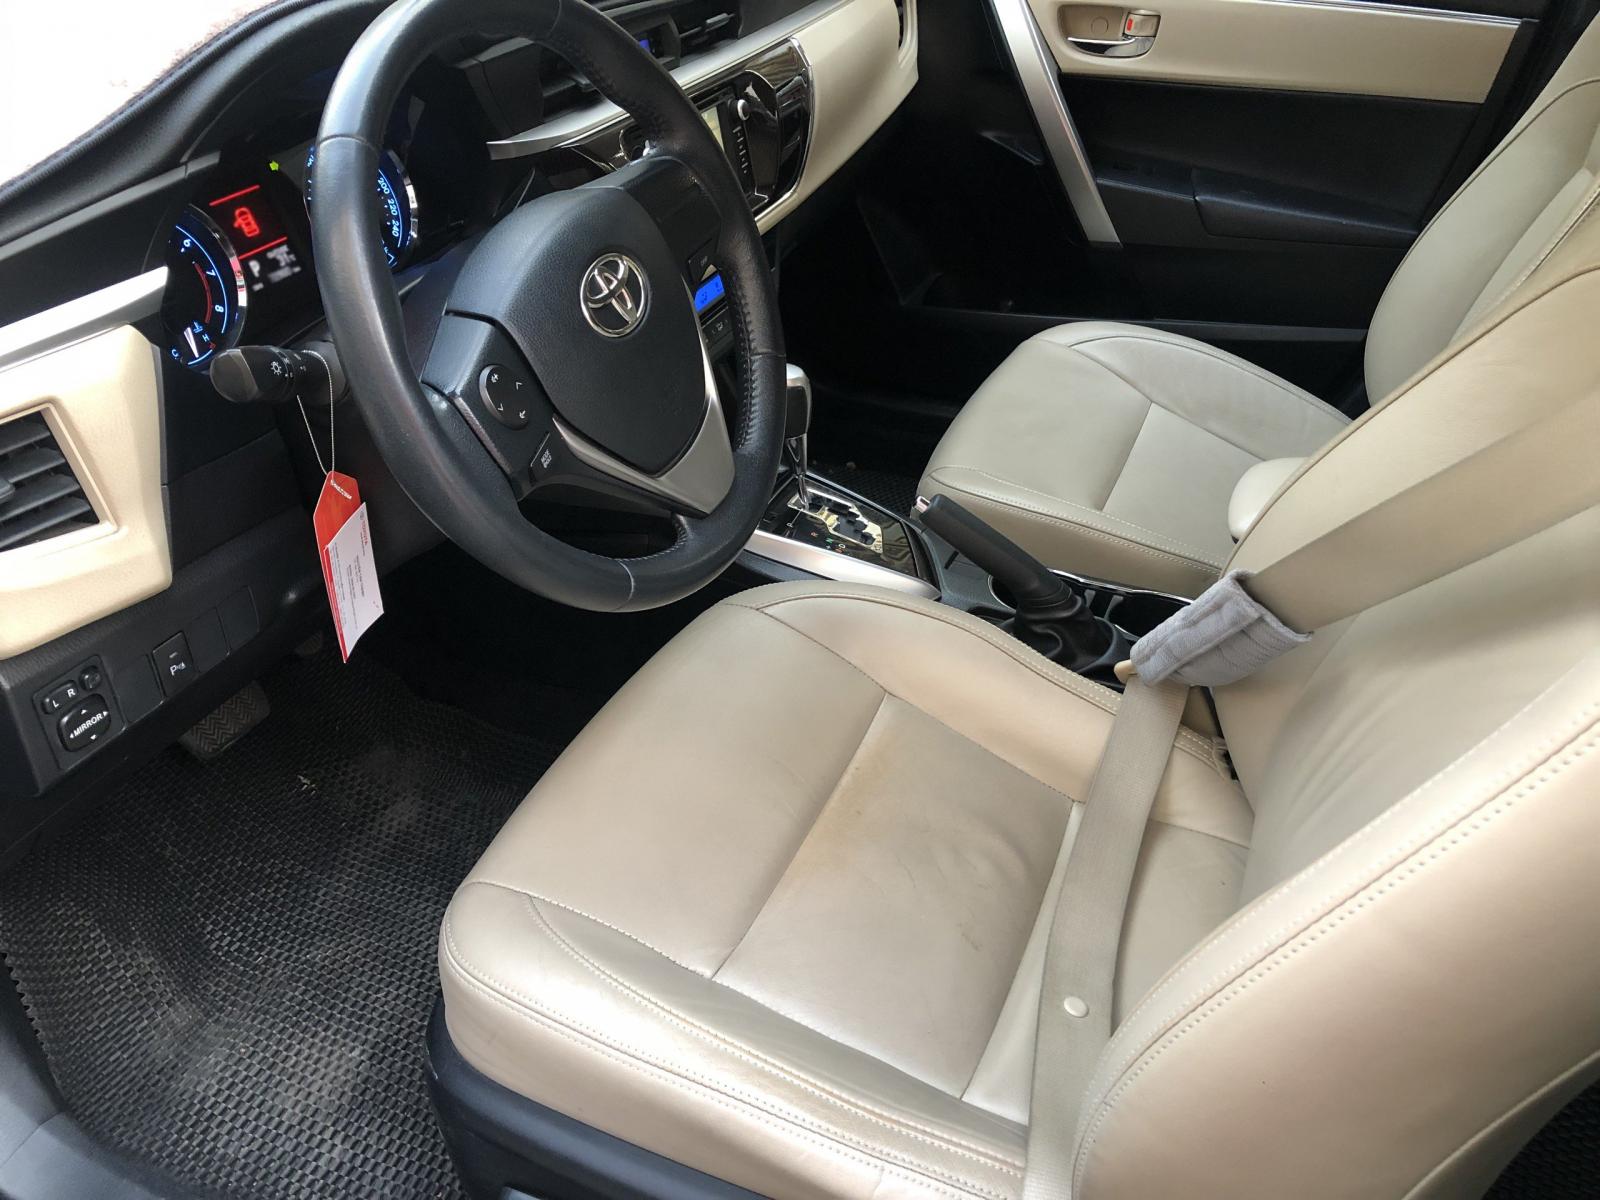 Toyota Corolla altis 2015 - Mình bán Toyota Altis 2015, tự động 1.8, phom mới, màu xám xanh